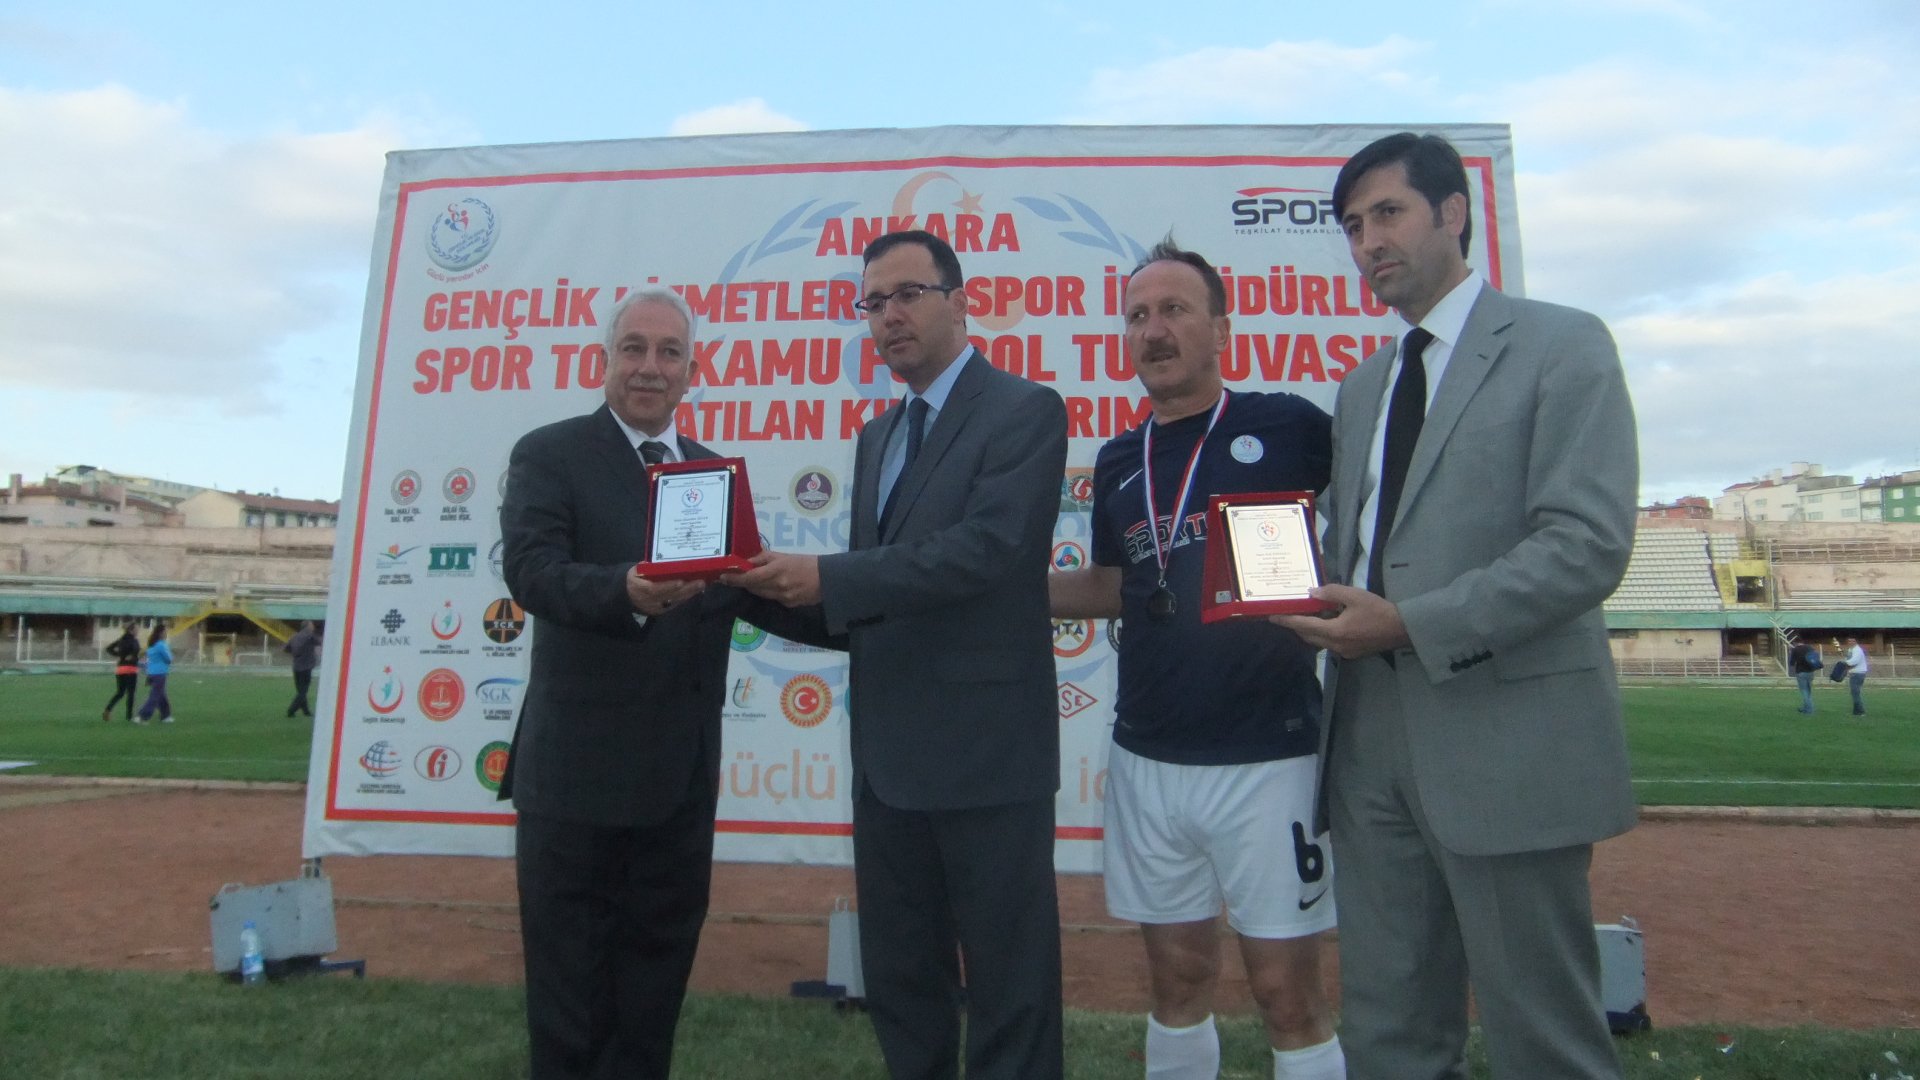 2013 Spor Toto Kamu Personeli Futbol Turnuvası sona erdi